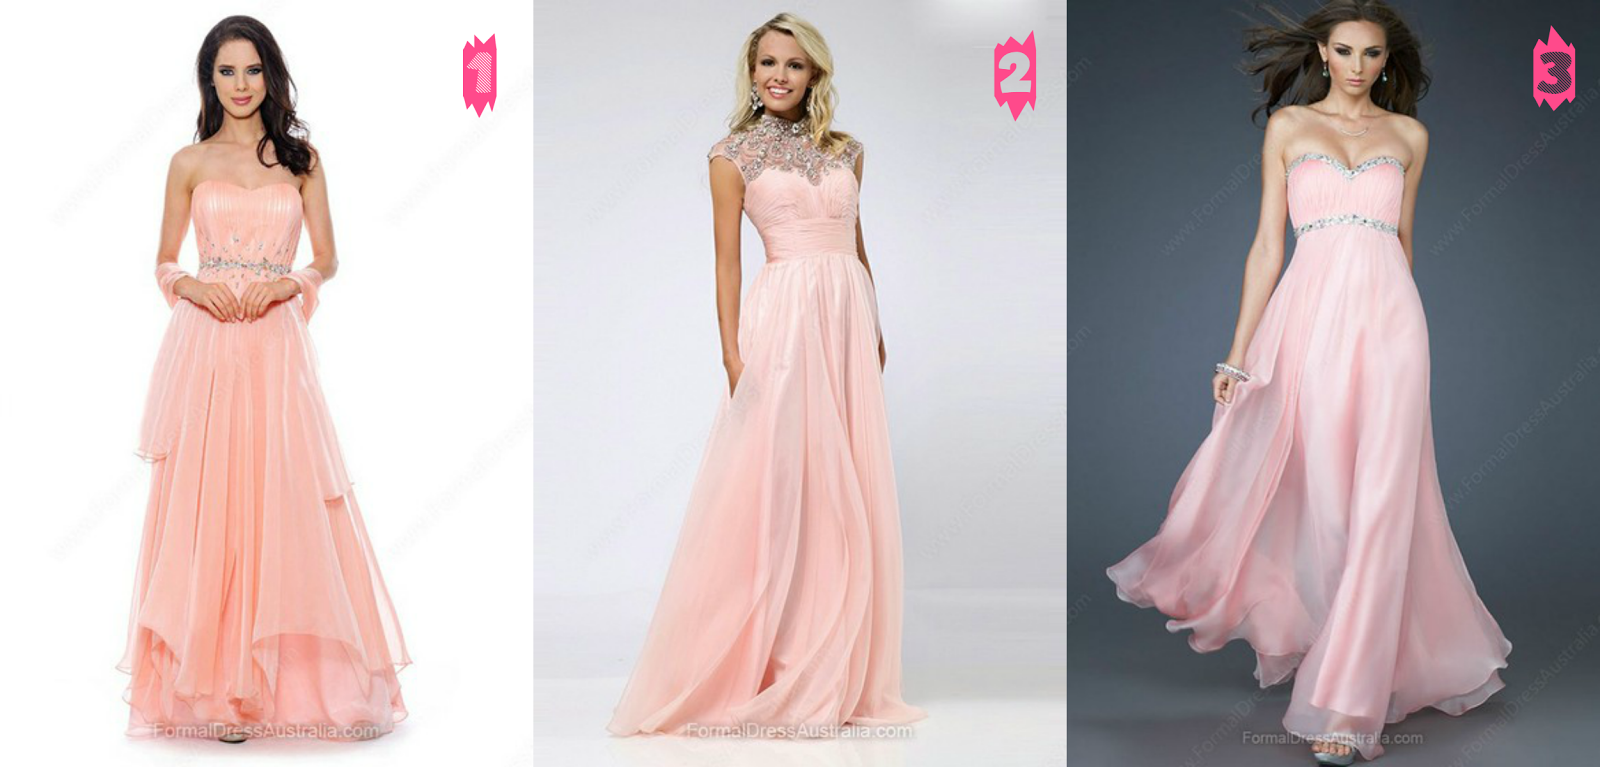 Inspirese Rose Quartz By Formal Dress Australia